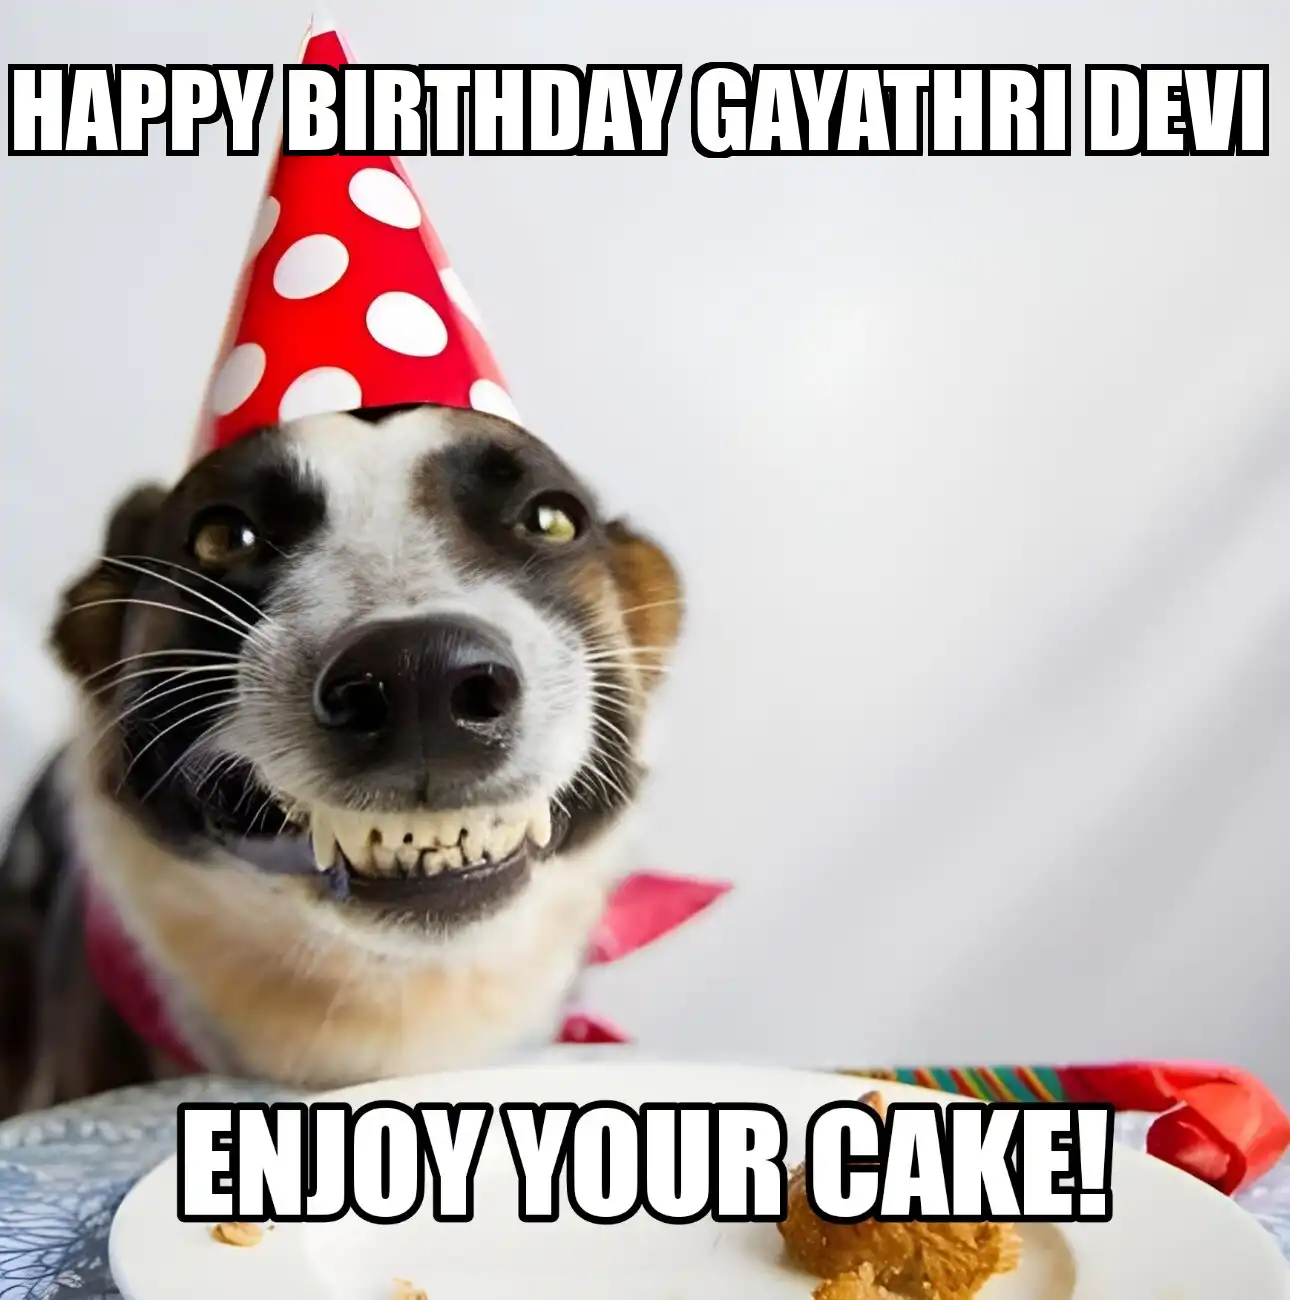 Happy Birthday Gayathri devi Enjoy Your Cake Dog Meme